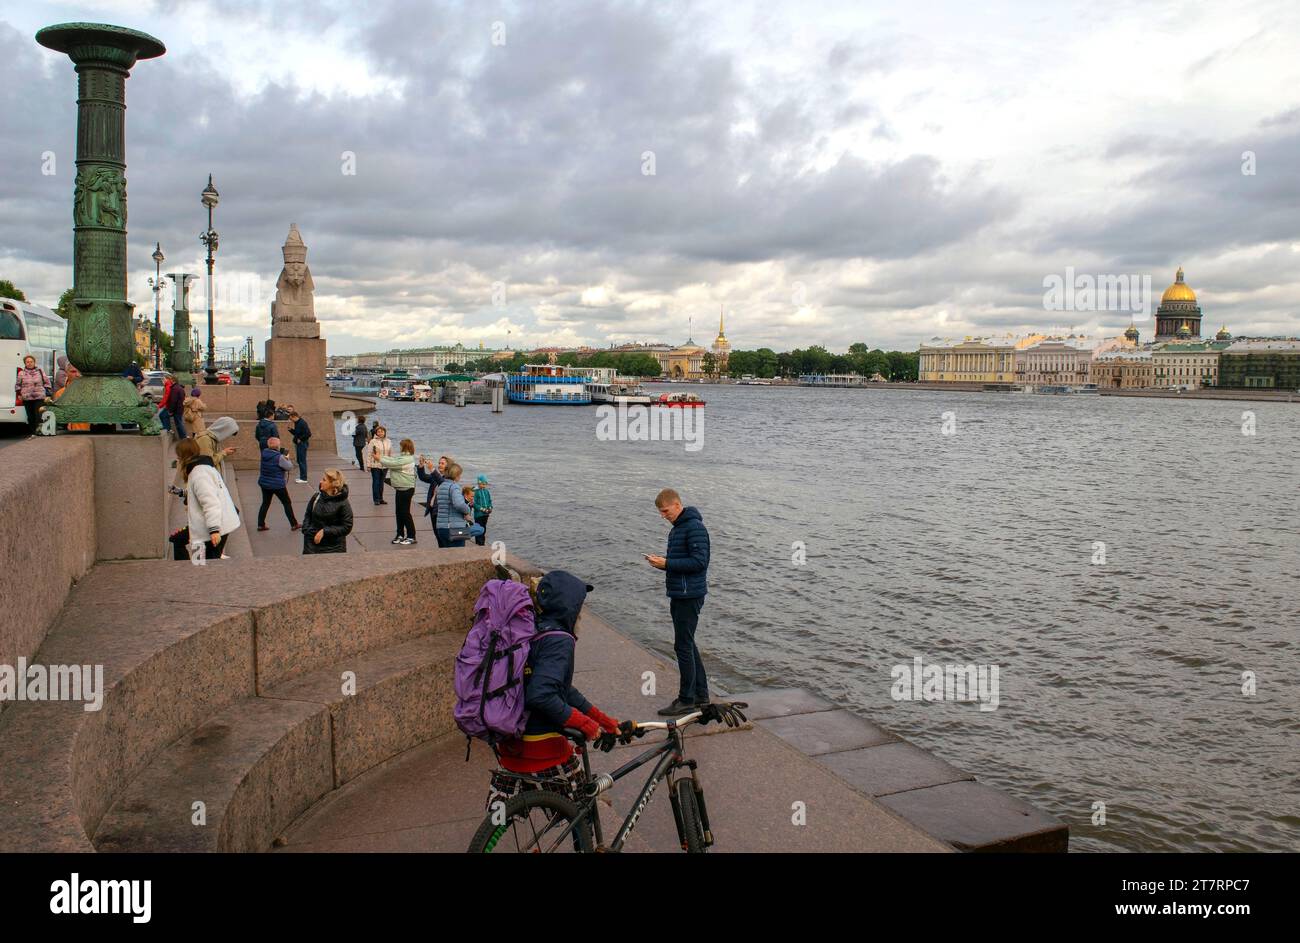 Saint-Pétersbourg - Russie 4 octobre 2022 : Griffon et Sphinx au bord de la rivière Neva. Okrug municipal 7. Vue d'ensemble de la rivière Neva avec bateaux et navires touristiques. Banque D'Images